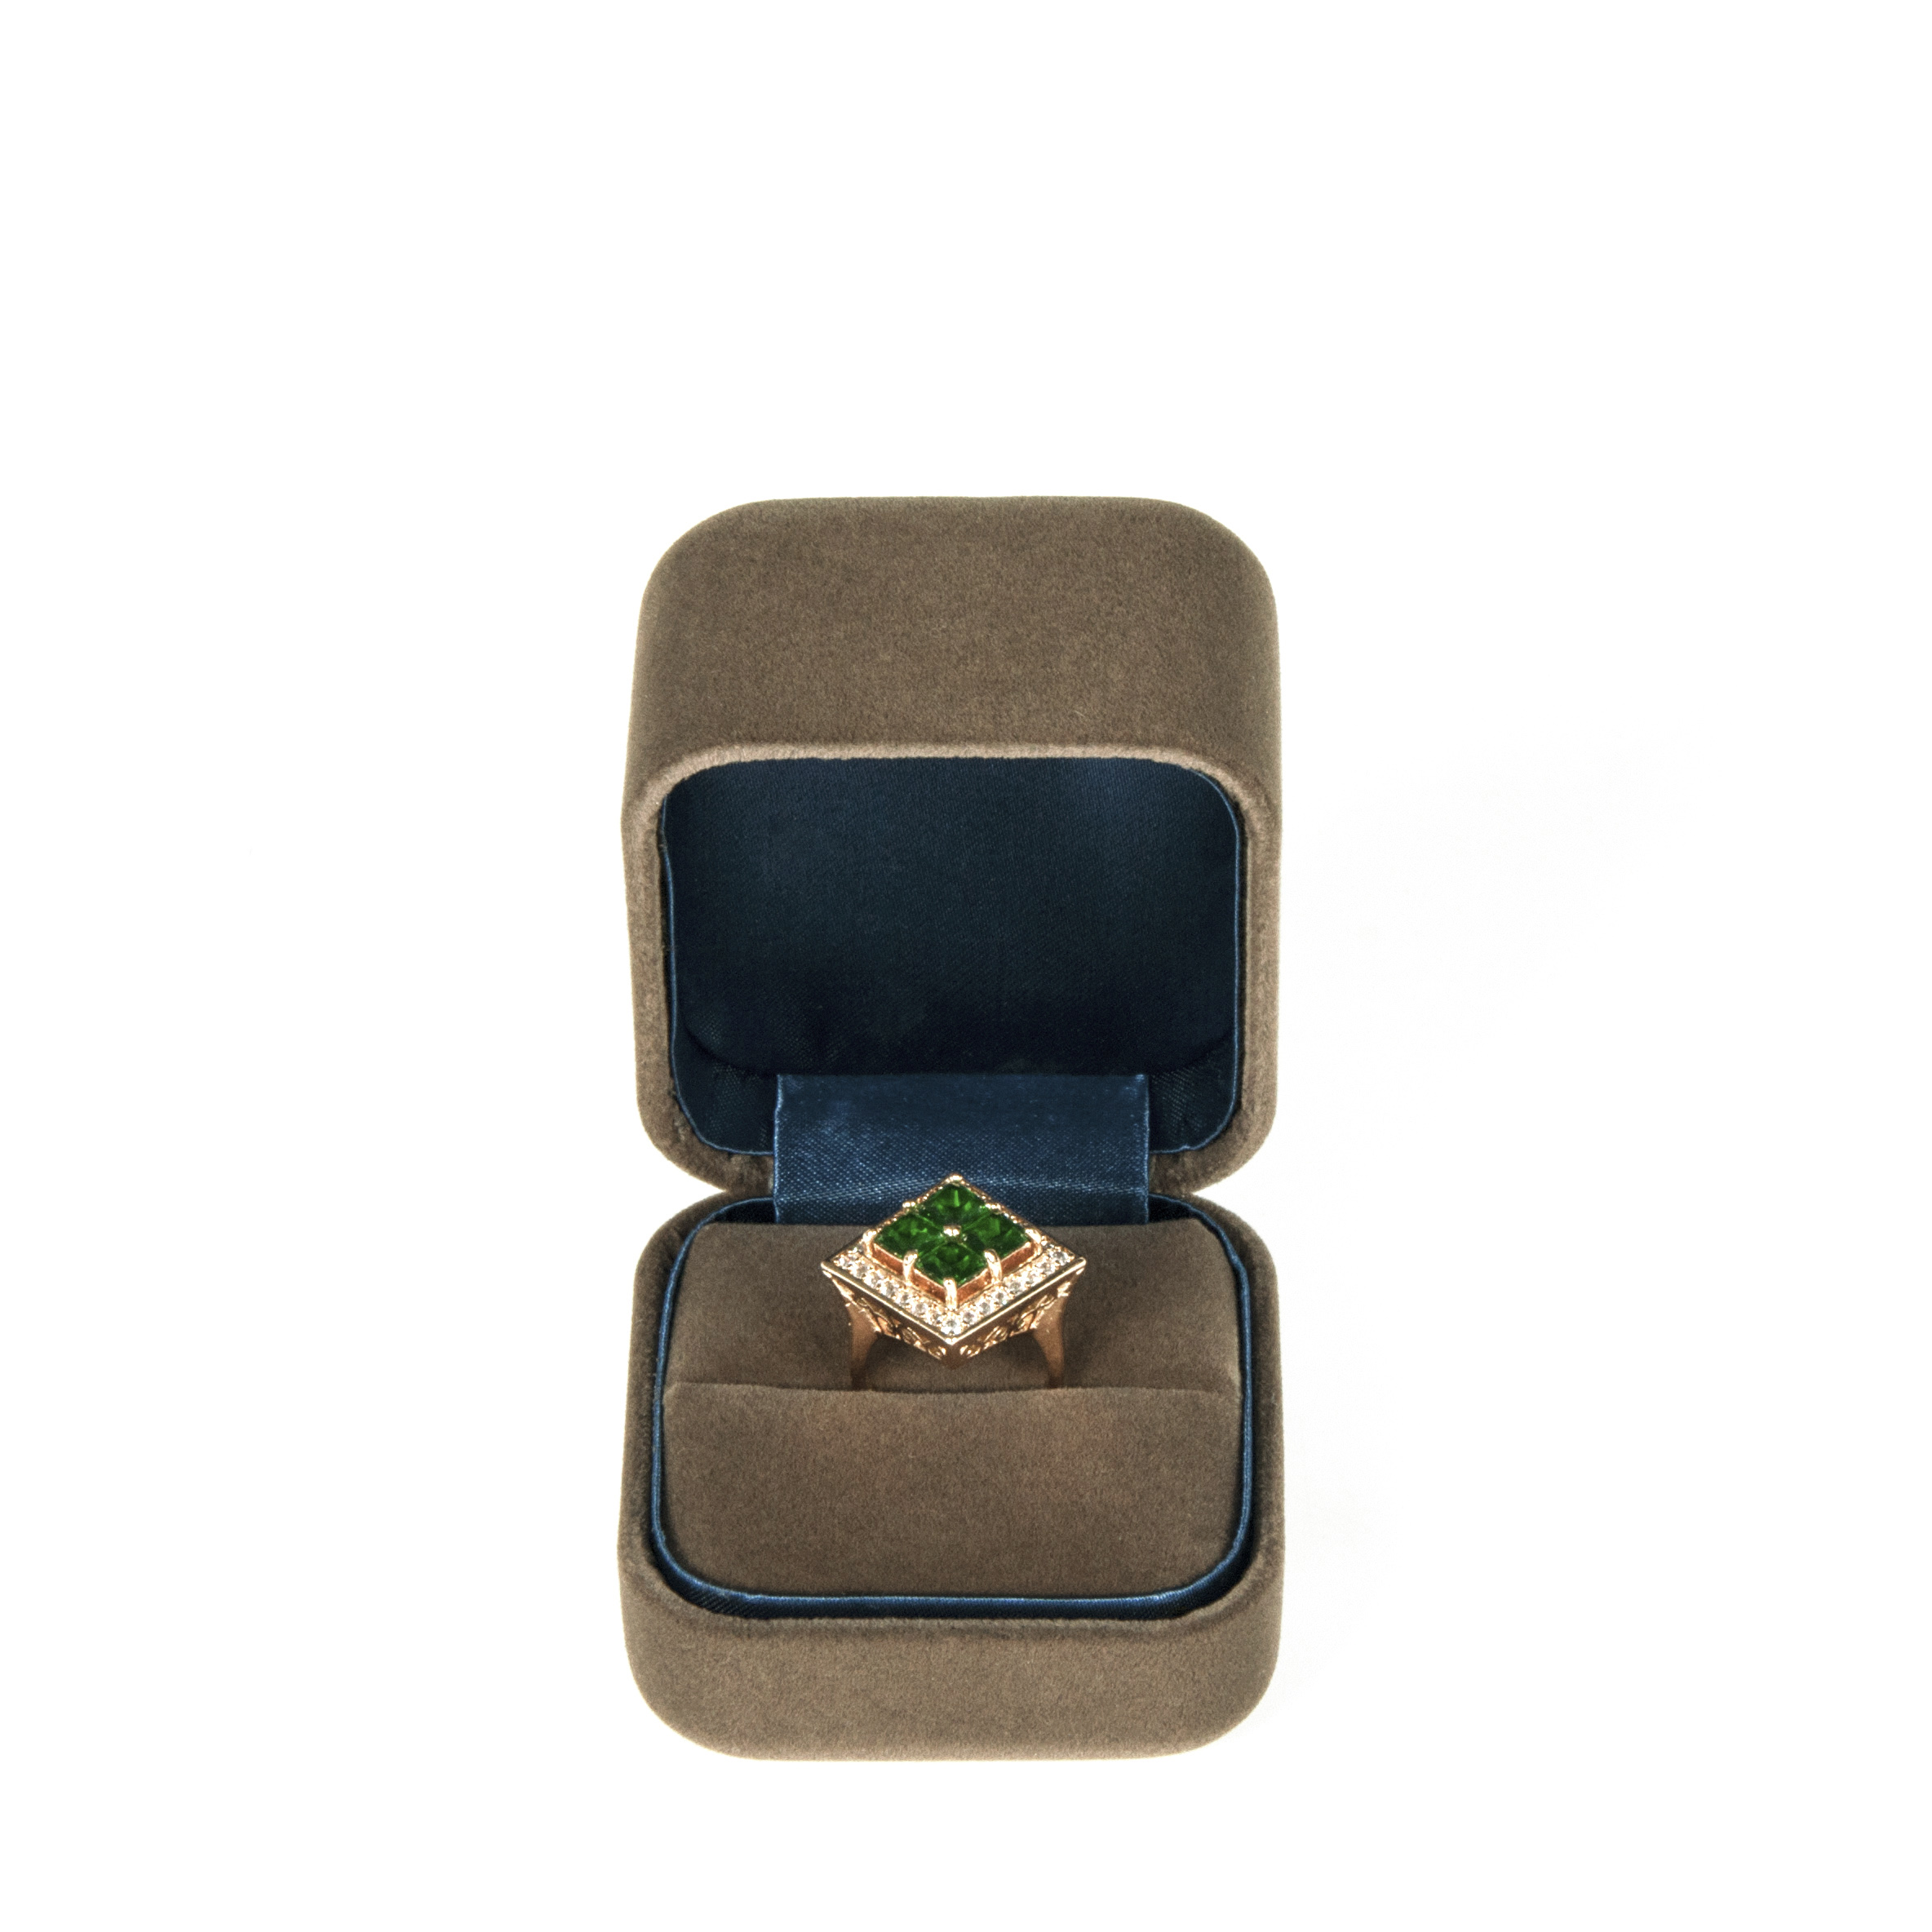 Populární zakázku Velvet Ring box design pro high-end jemné šperky balíček s logem tištěné s vysokou kvalitou.